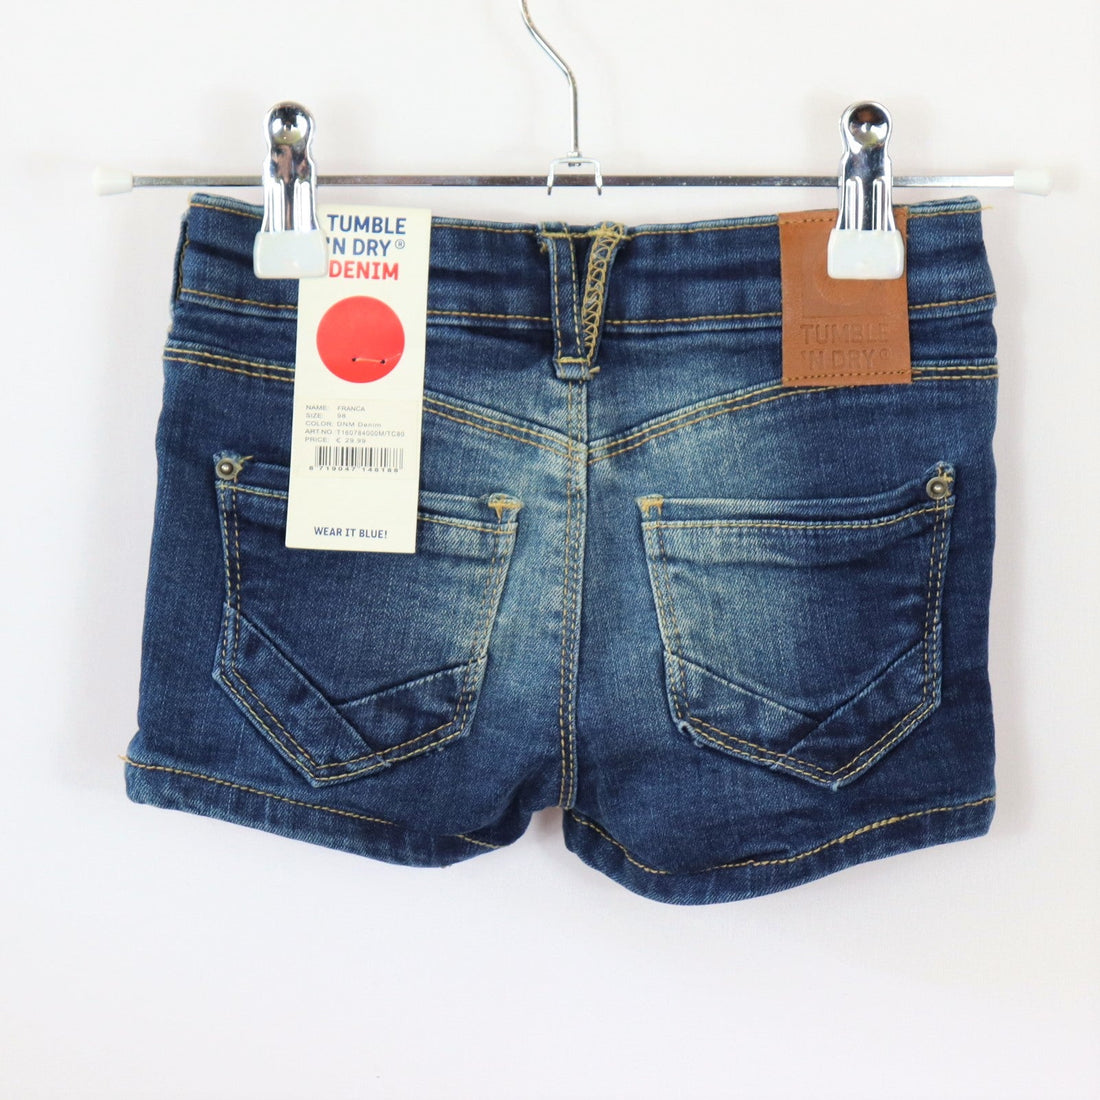 Hose - Tumble `N Dry - kurz - 98 - blau - Größen-verstellbar - Jeans - Girl - sehr guter Zustand